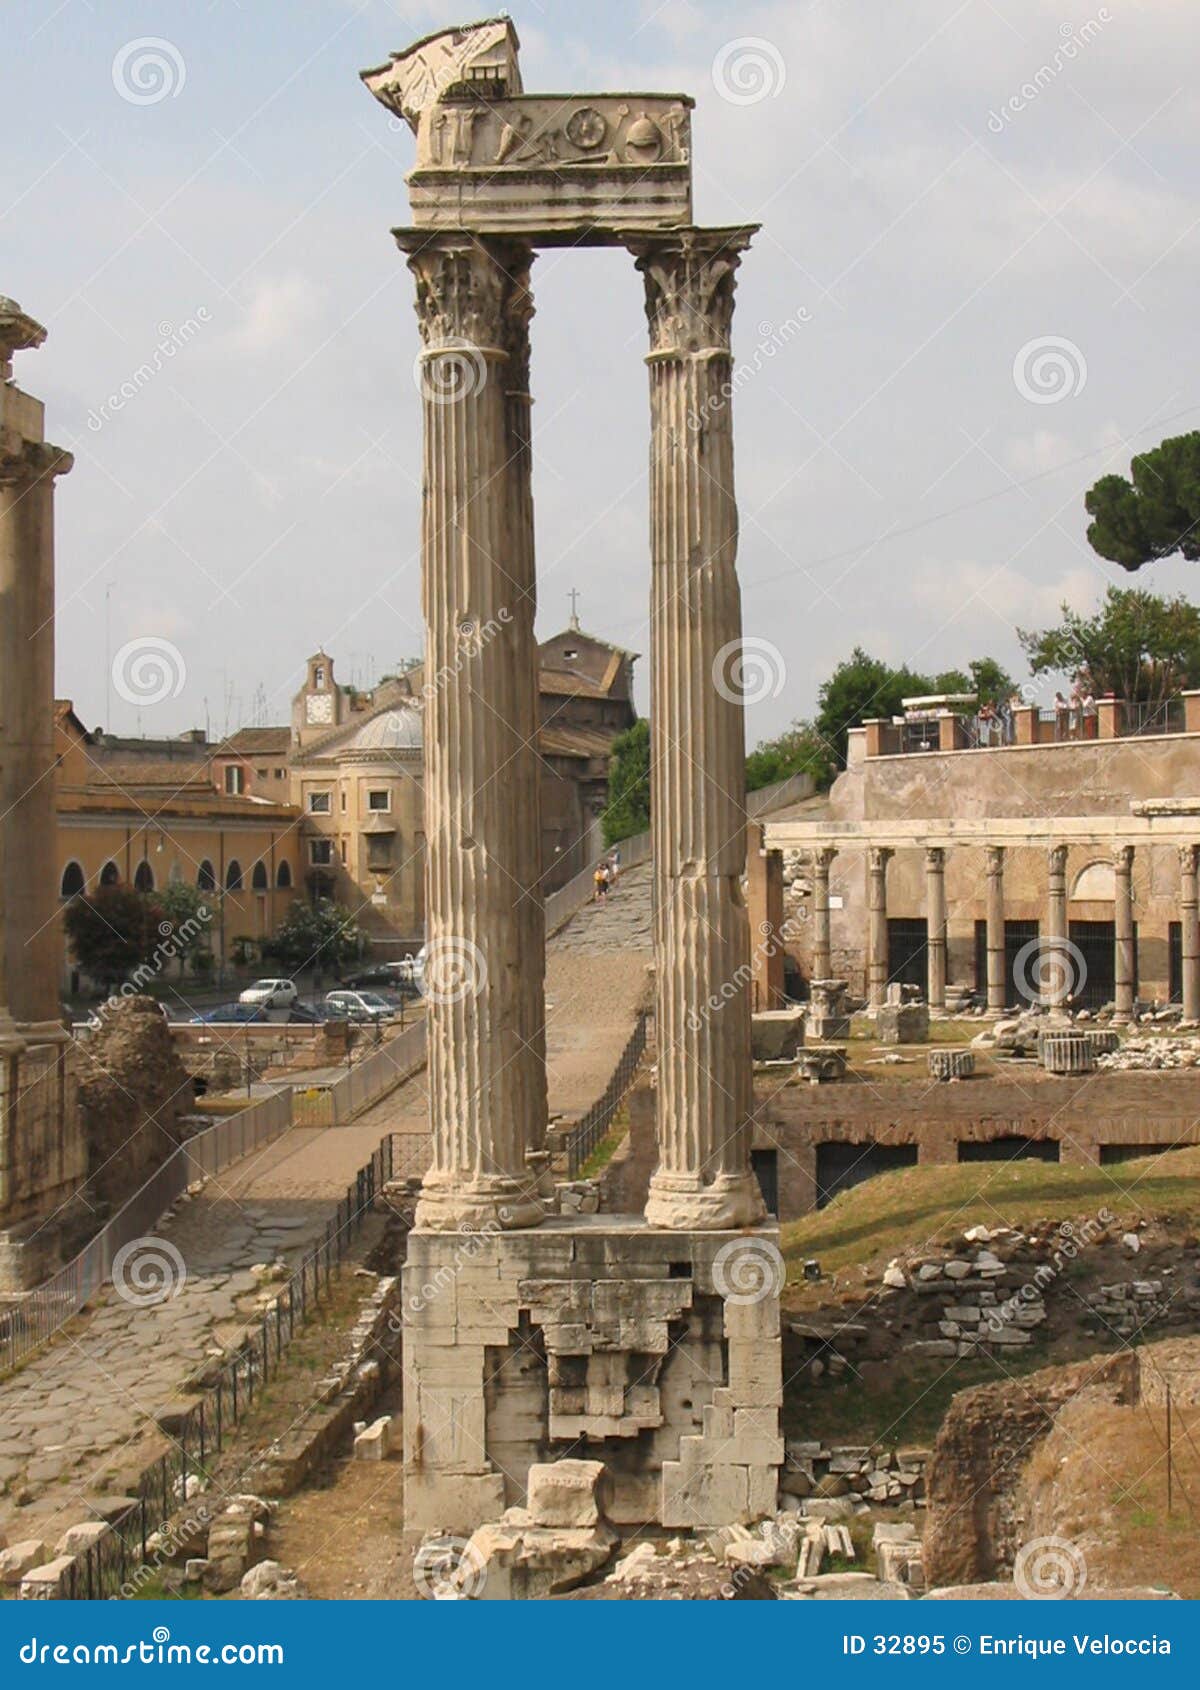 colonna dil foro romano